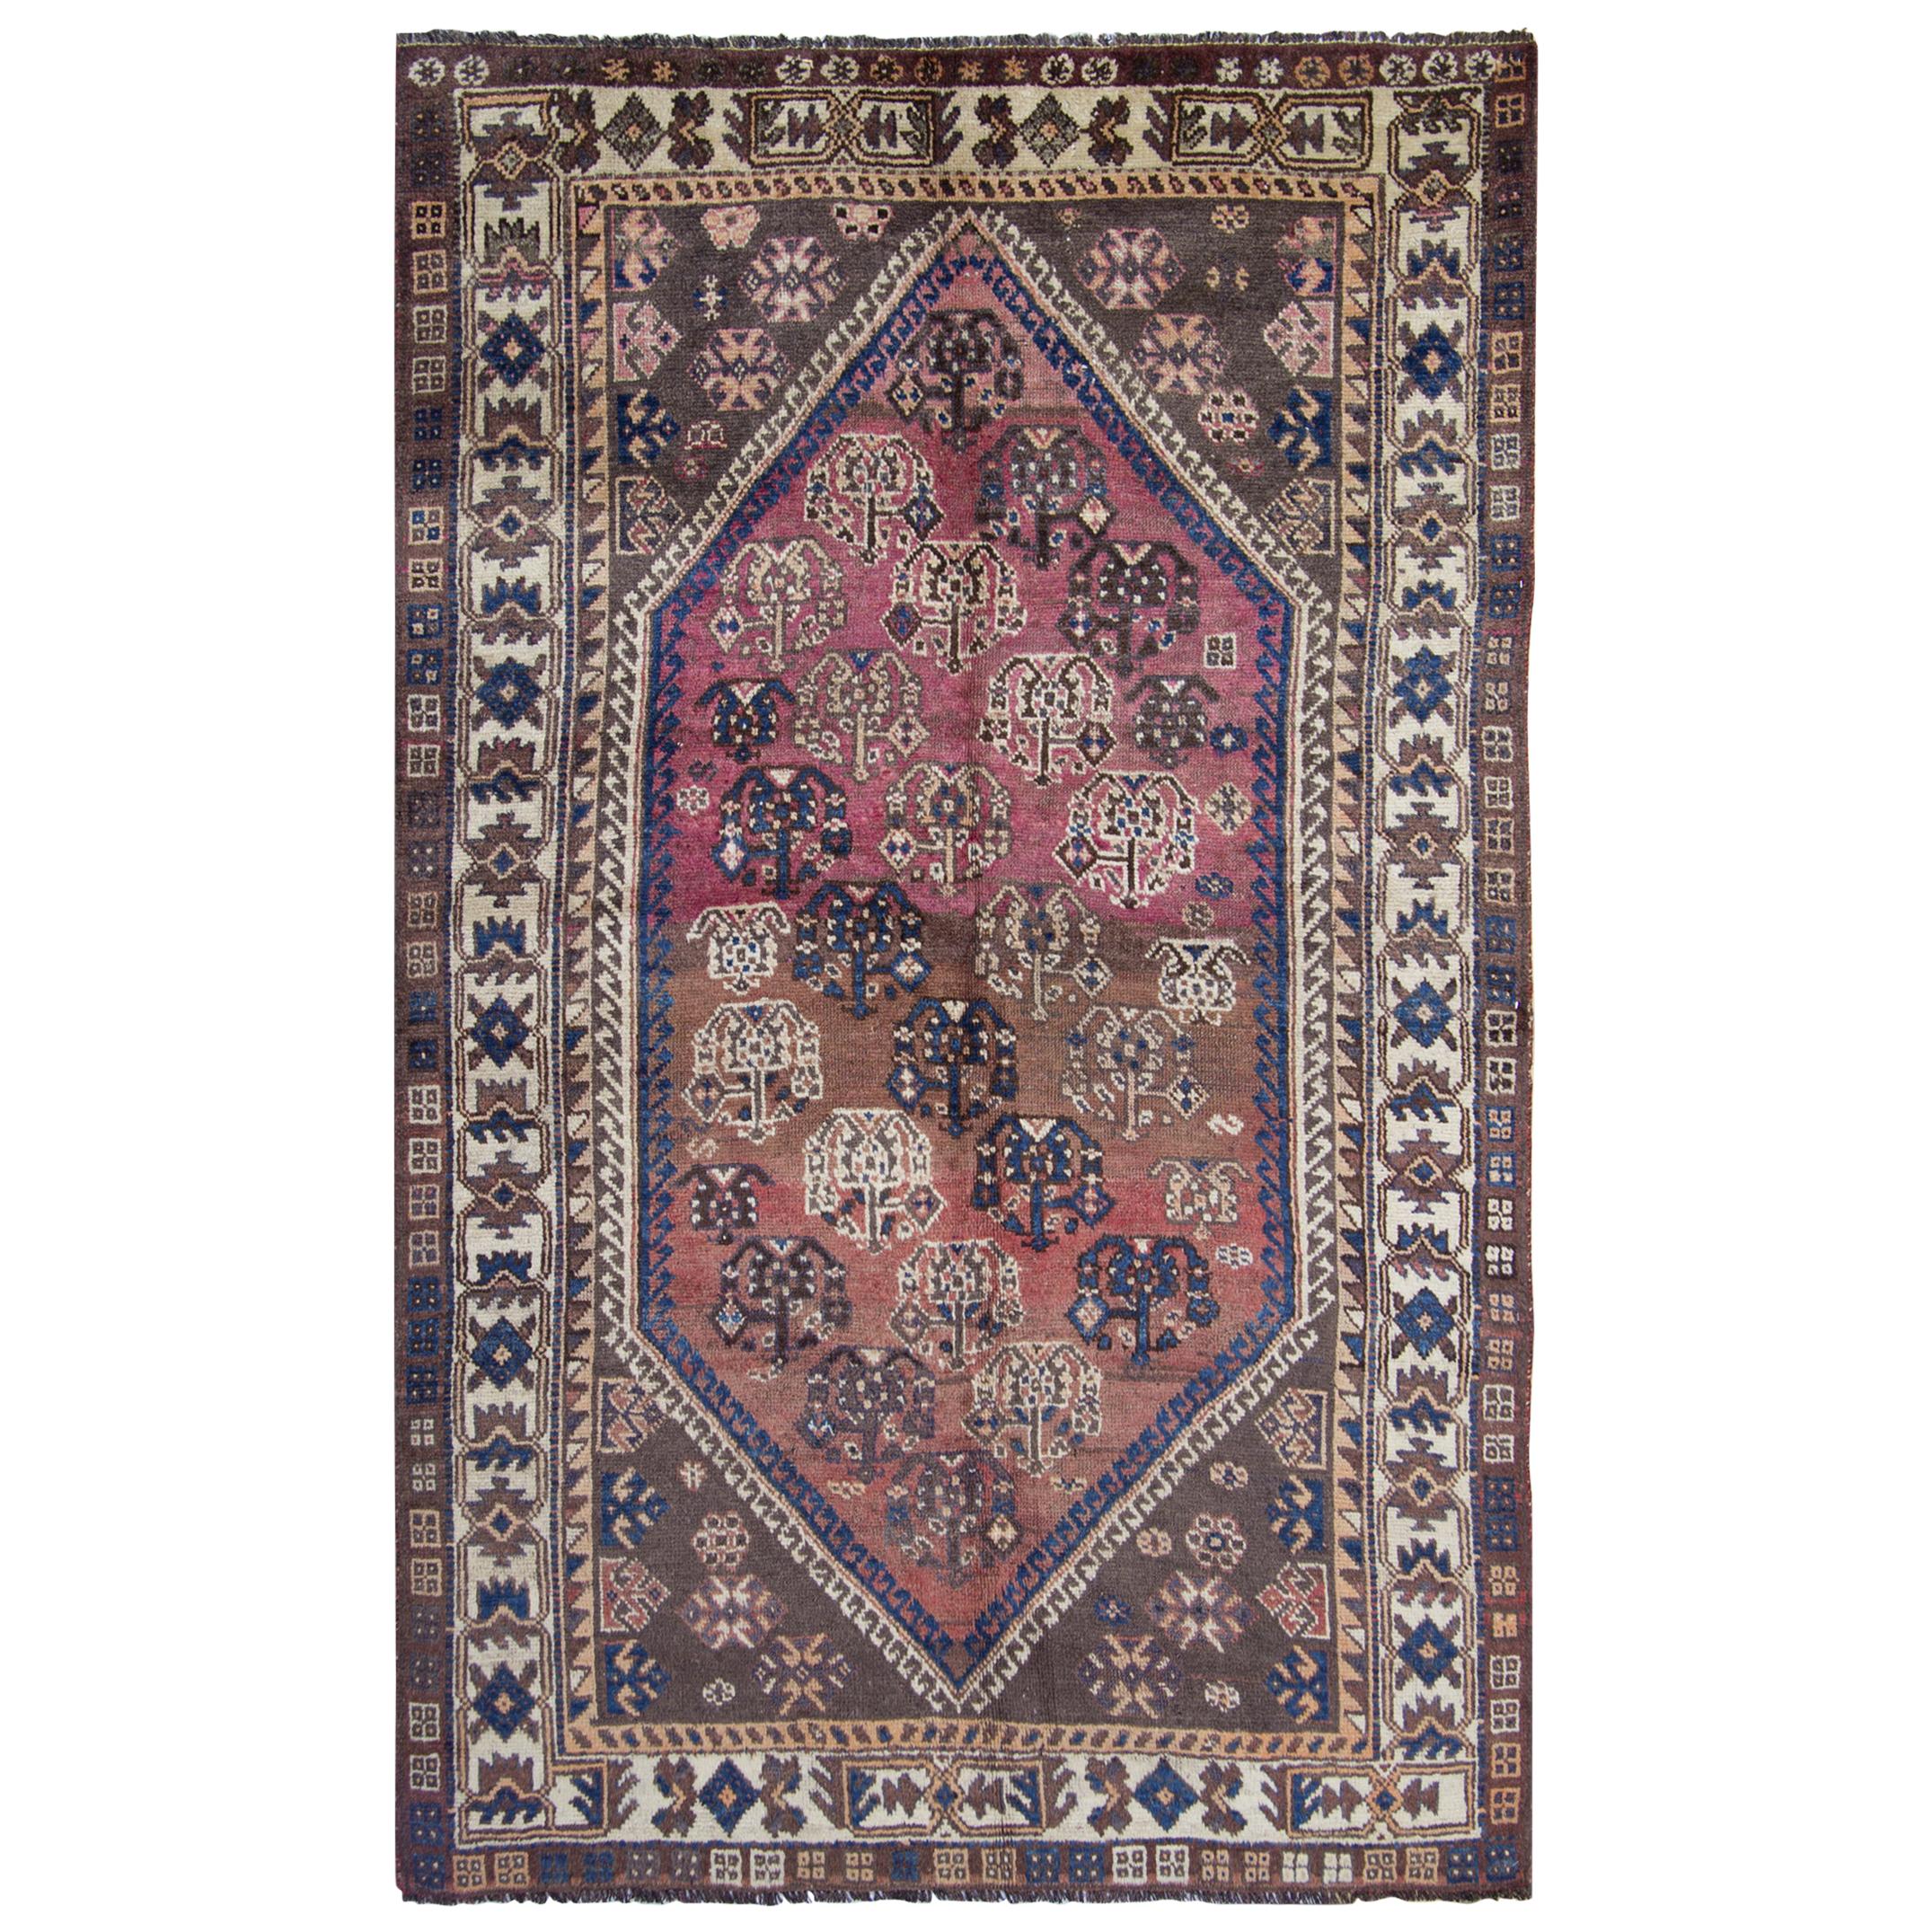 Vintage Rug Geometric Paisley Rug, Purple Oriental Handmade Carpet